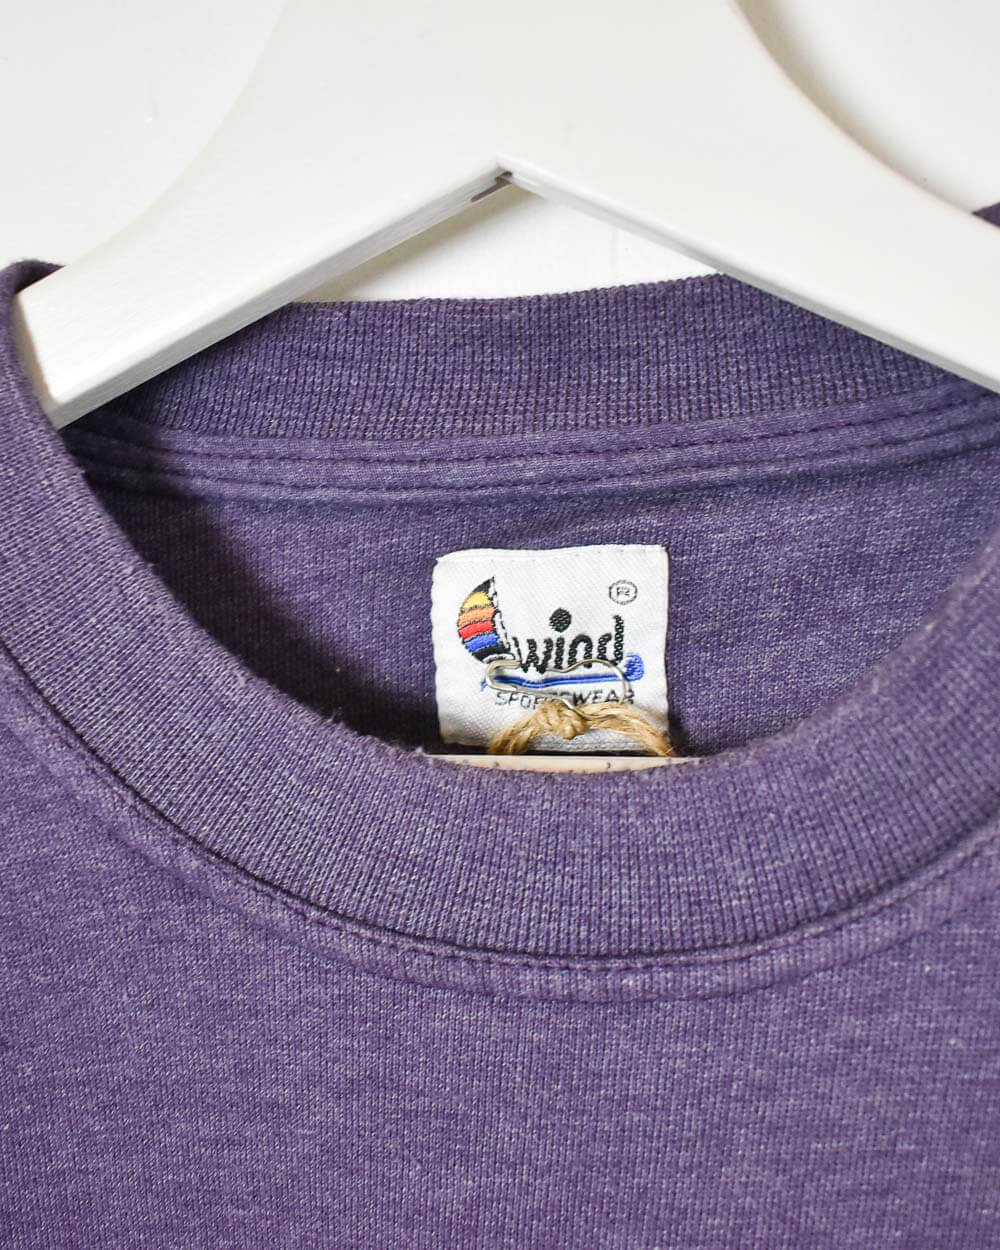 Purple Wind International Basic Team Sweatshirt - Medium